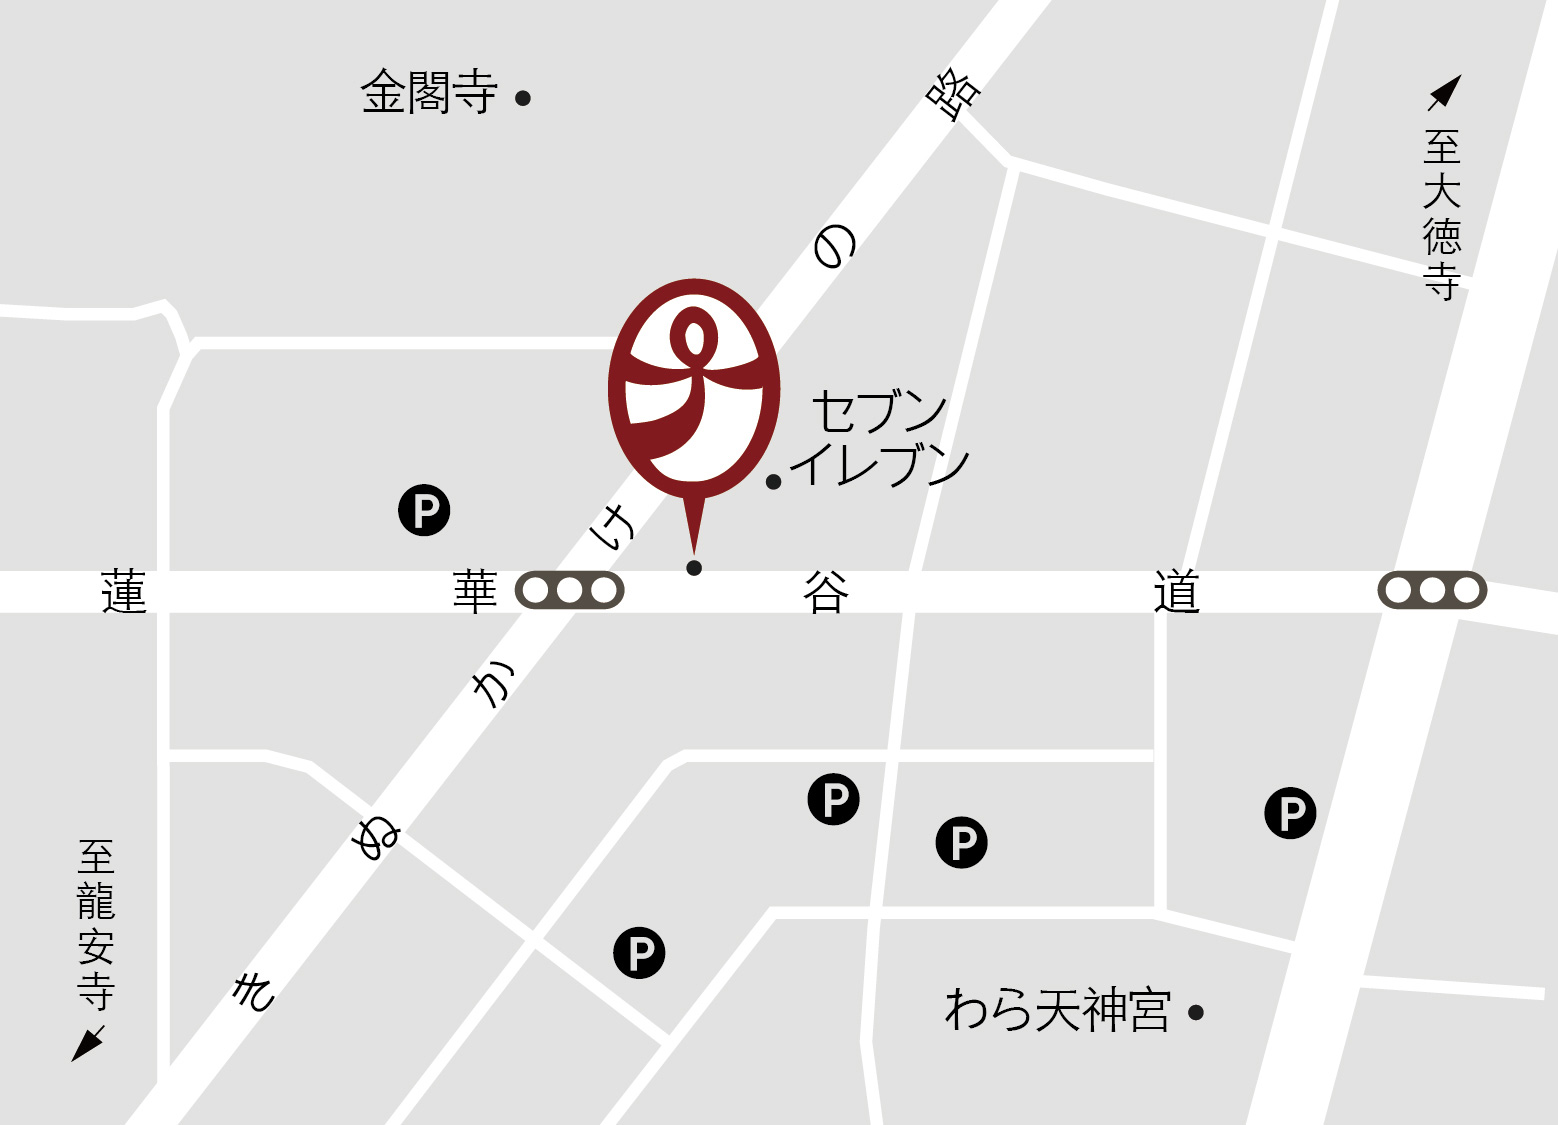 茶盤寺「サバンジ」京都金閣寺徒歩すぐの町家ラーメン店